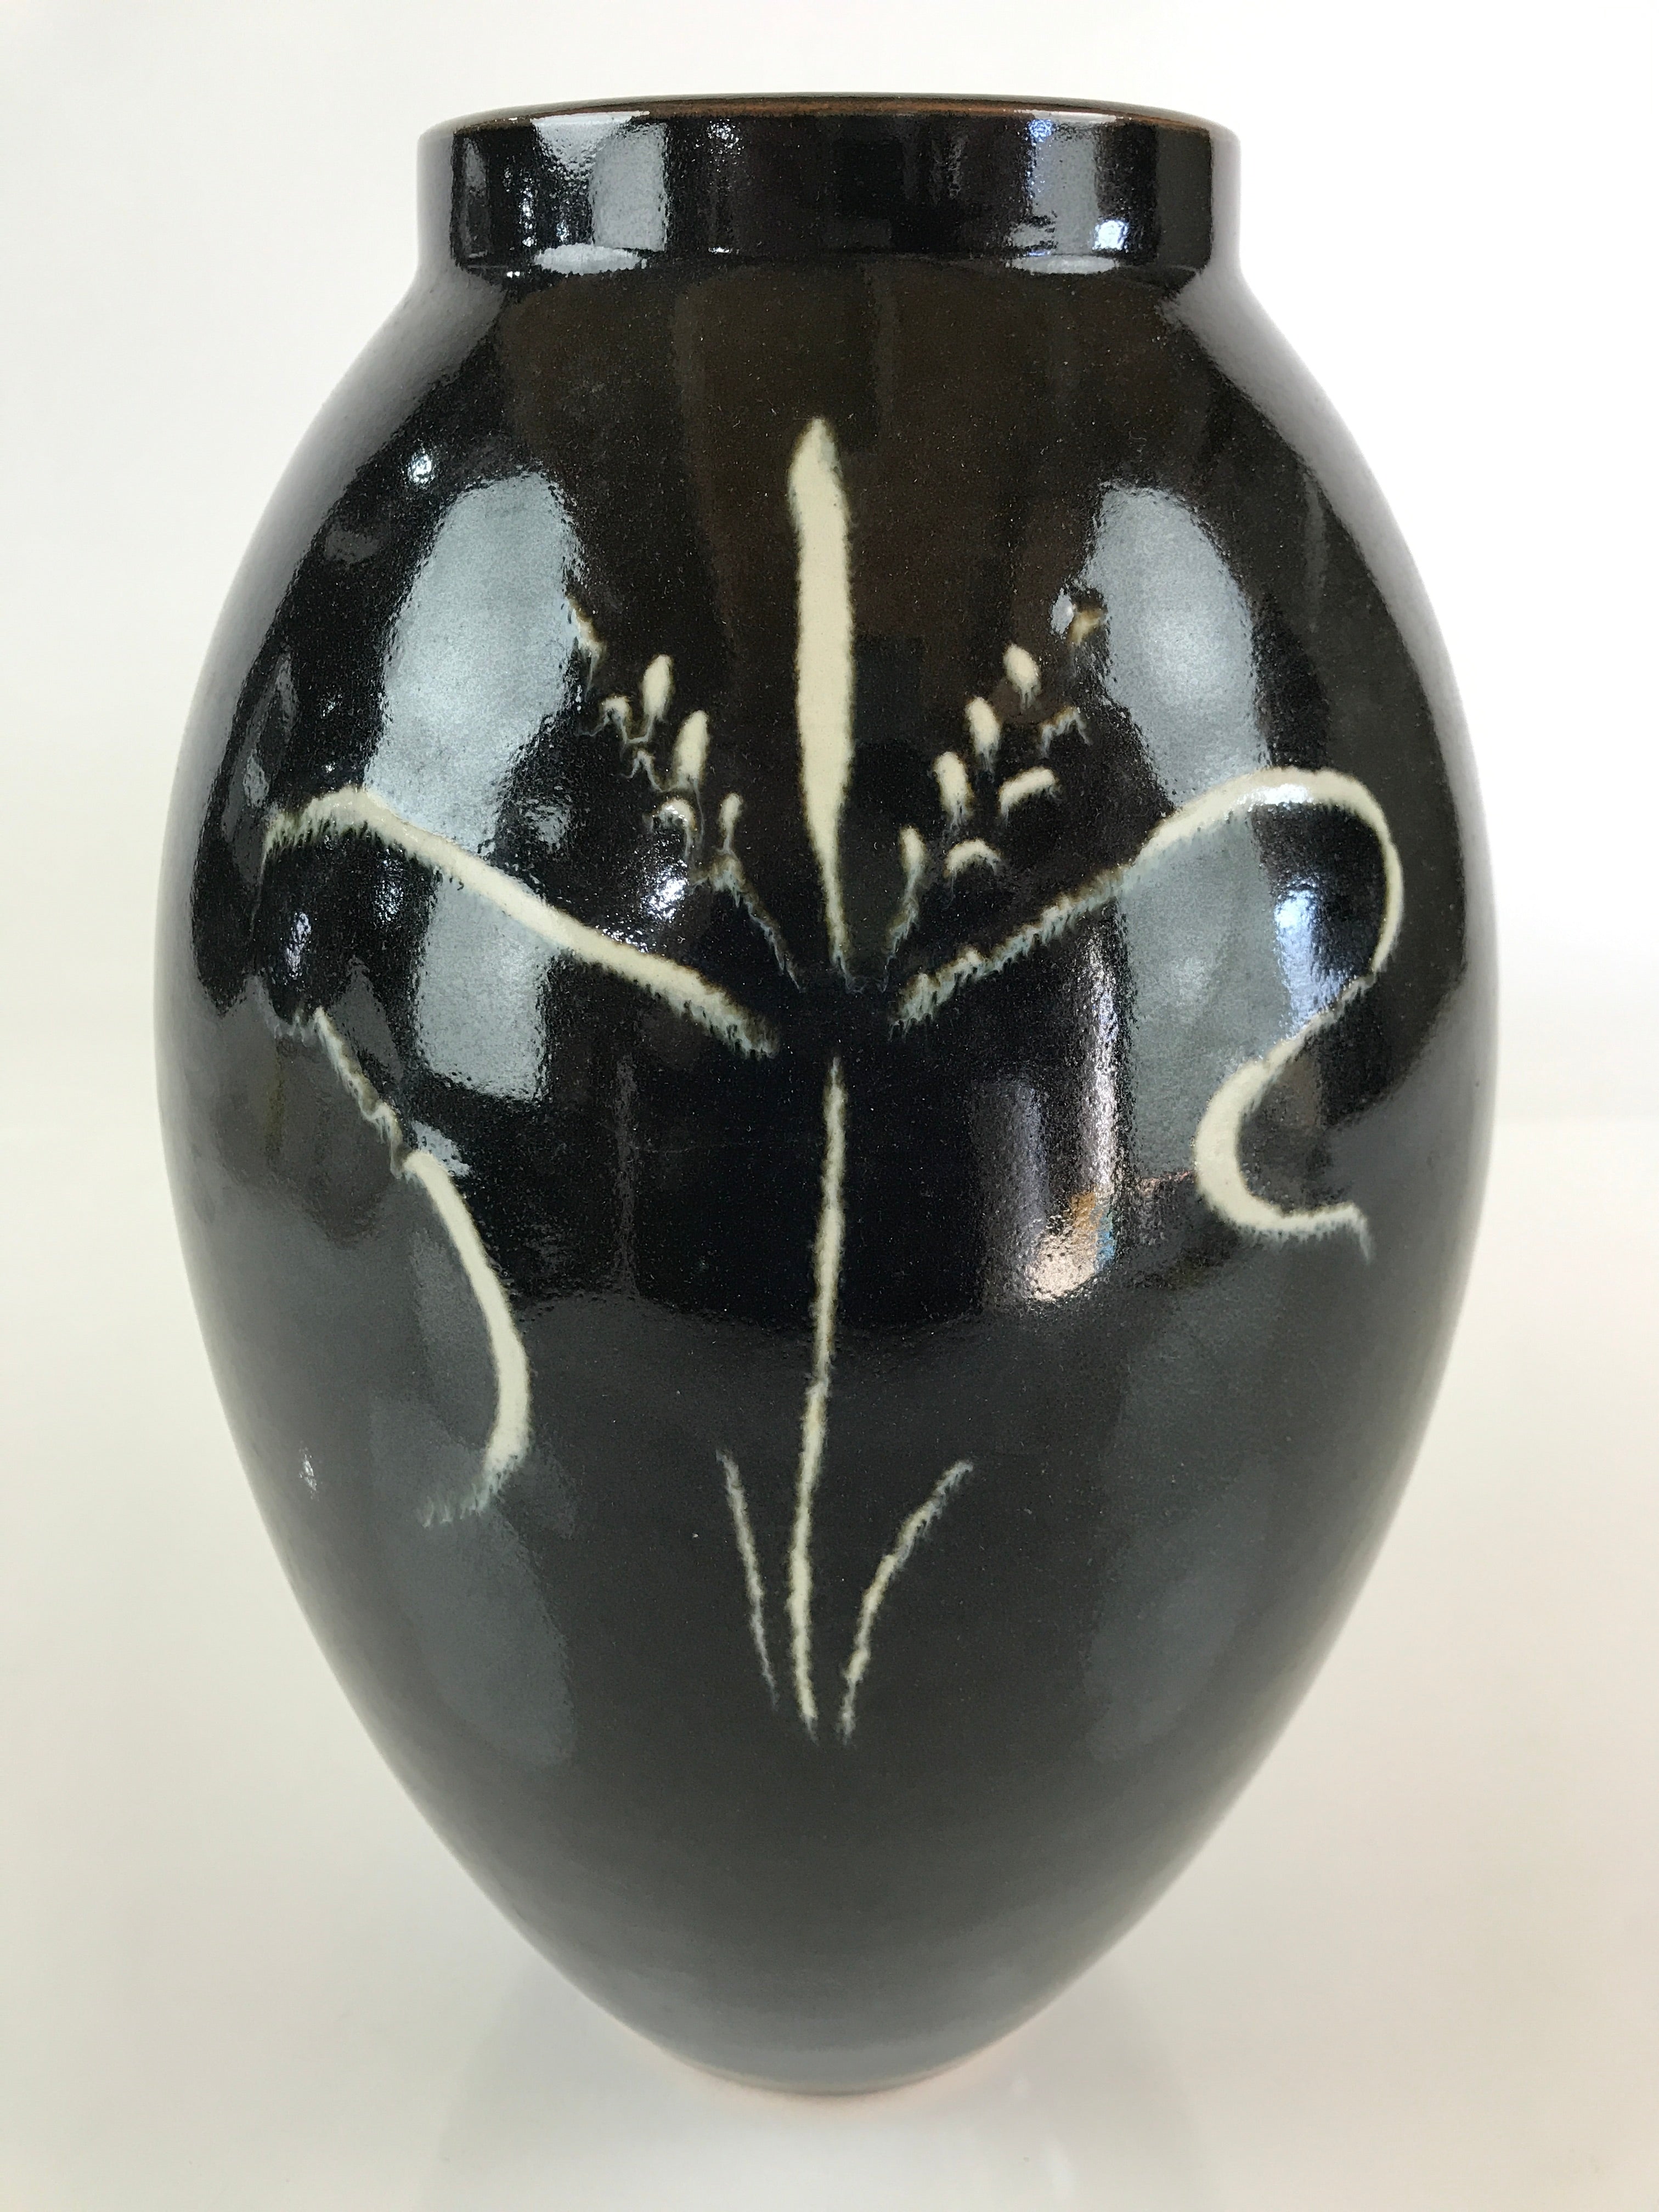 Japanese Porcelain Flower Vase Vtg Kabin Ikebana Arrangement Black PX651